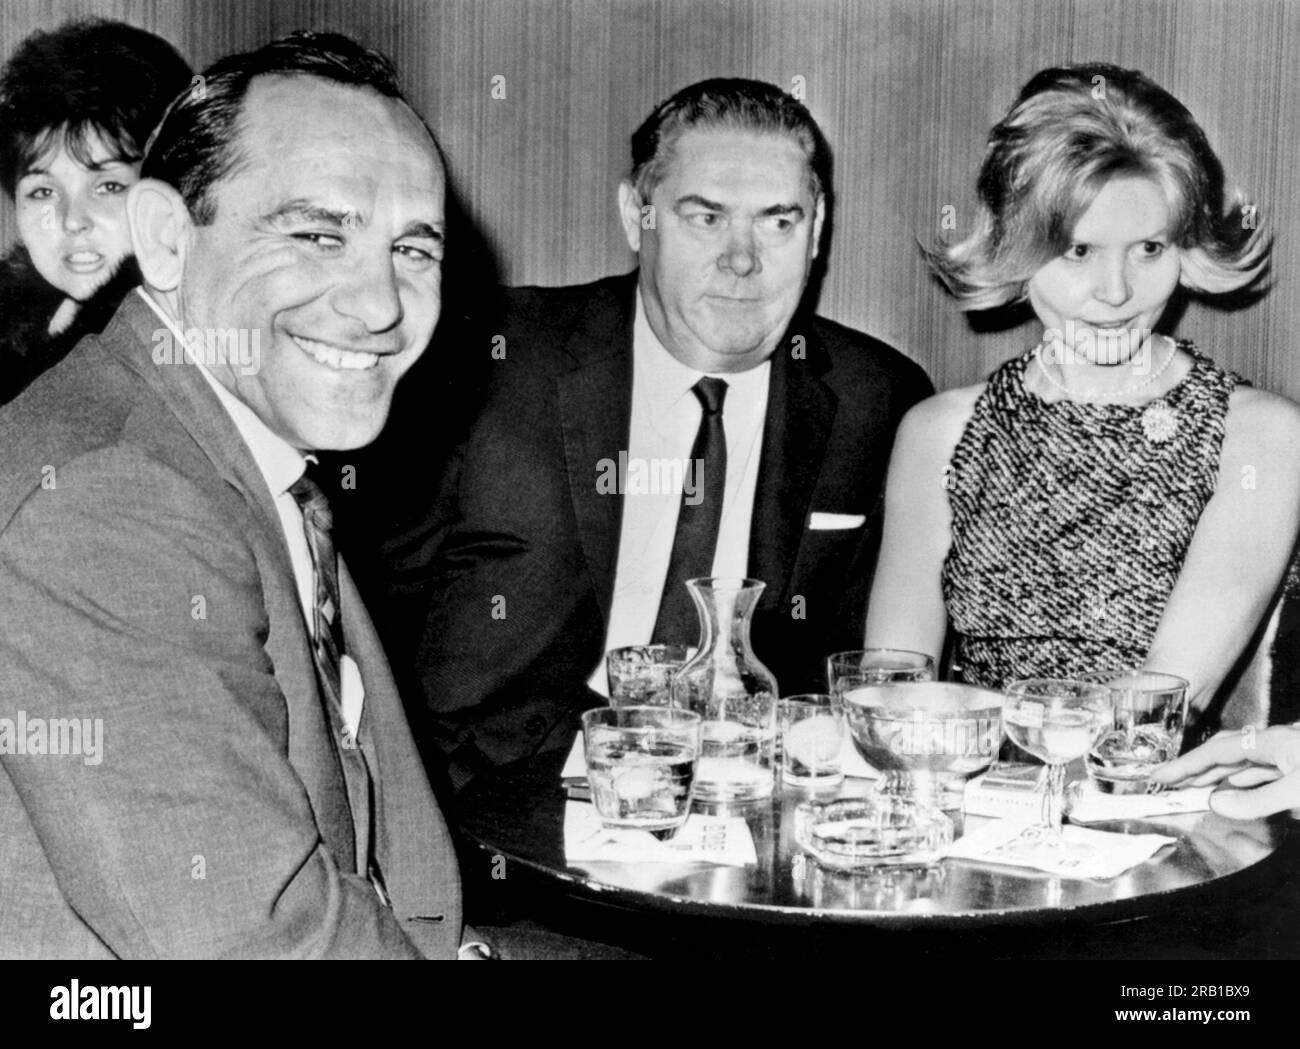 New York, New York : 25 octobre 1963 Un heureux Yogi Berra célèbre sa nomination en tant que Manager des New York Yankees à la boîte de nuit Toots Shors avec sa femme et le directeur général des Yankees Roy Hamey. Banque D'Images